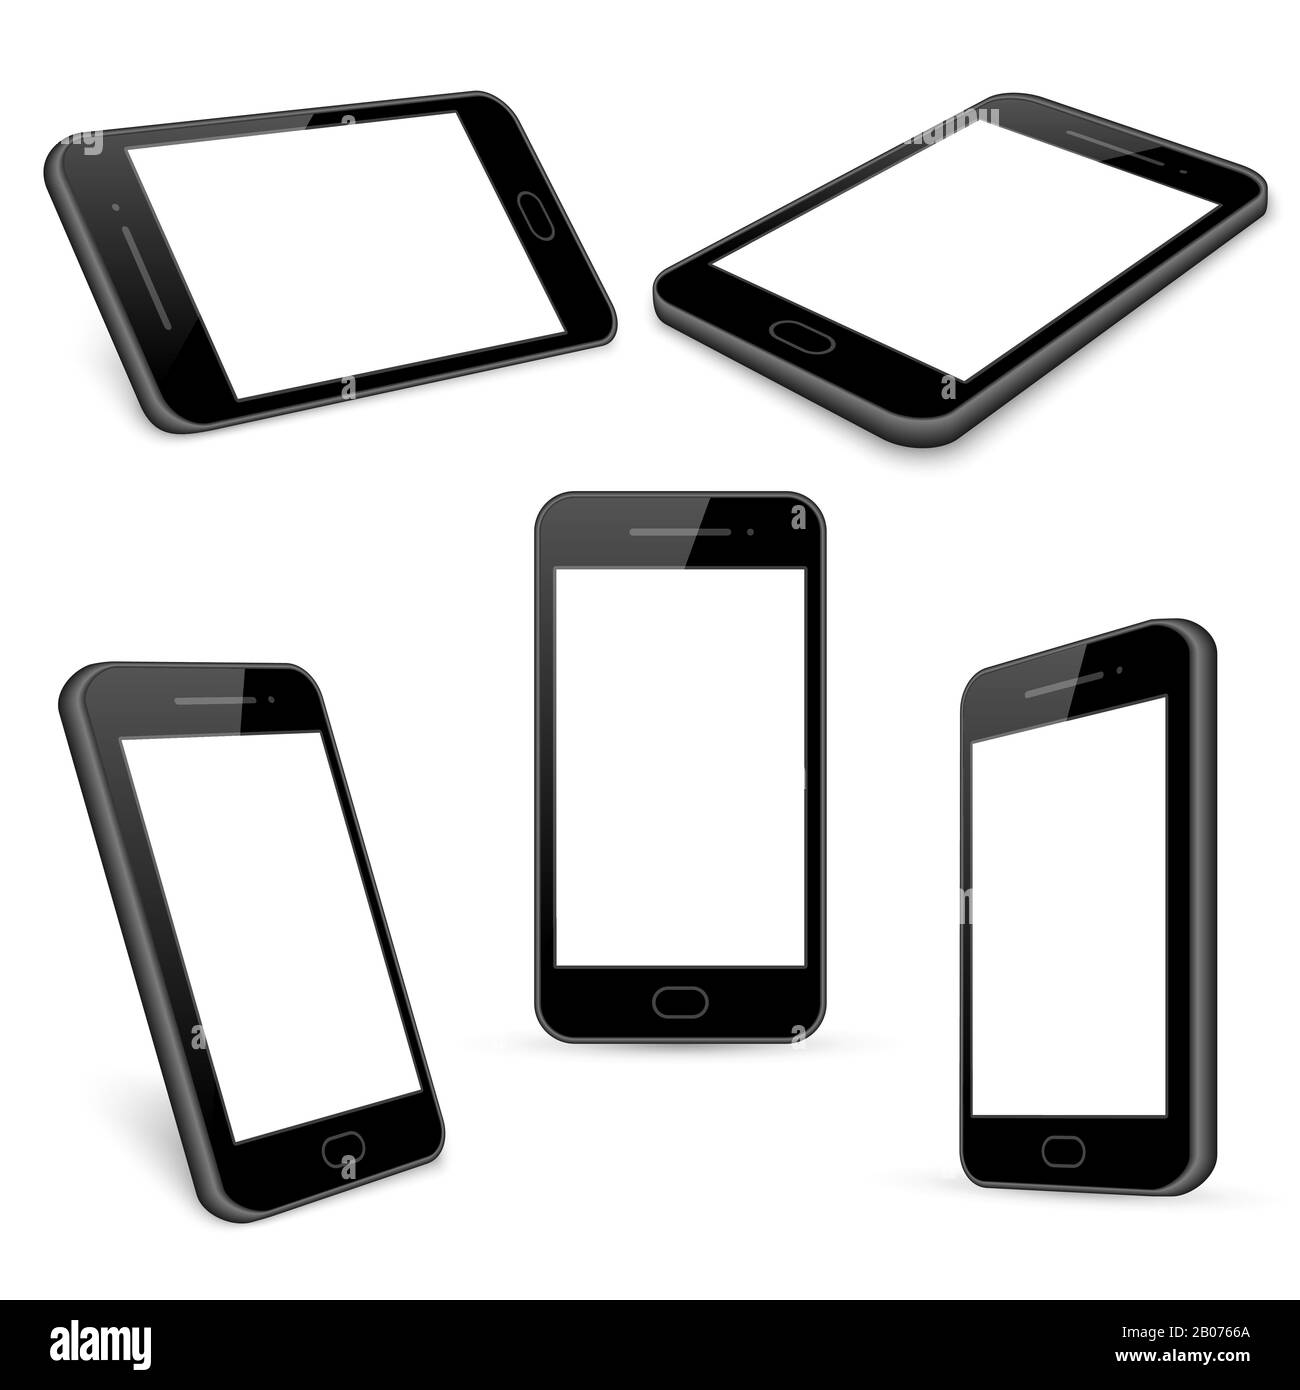 Les modèles de téléphone mobile noir vectoriel sont isolés en blanc. Gadget avec écran tactile, téléphone et illustration de smartphone Illustration de Vecteur